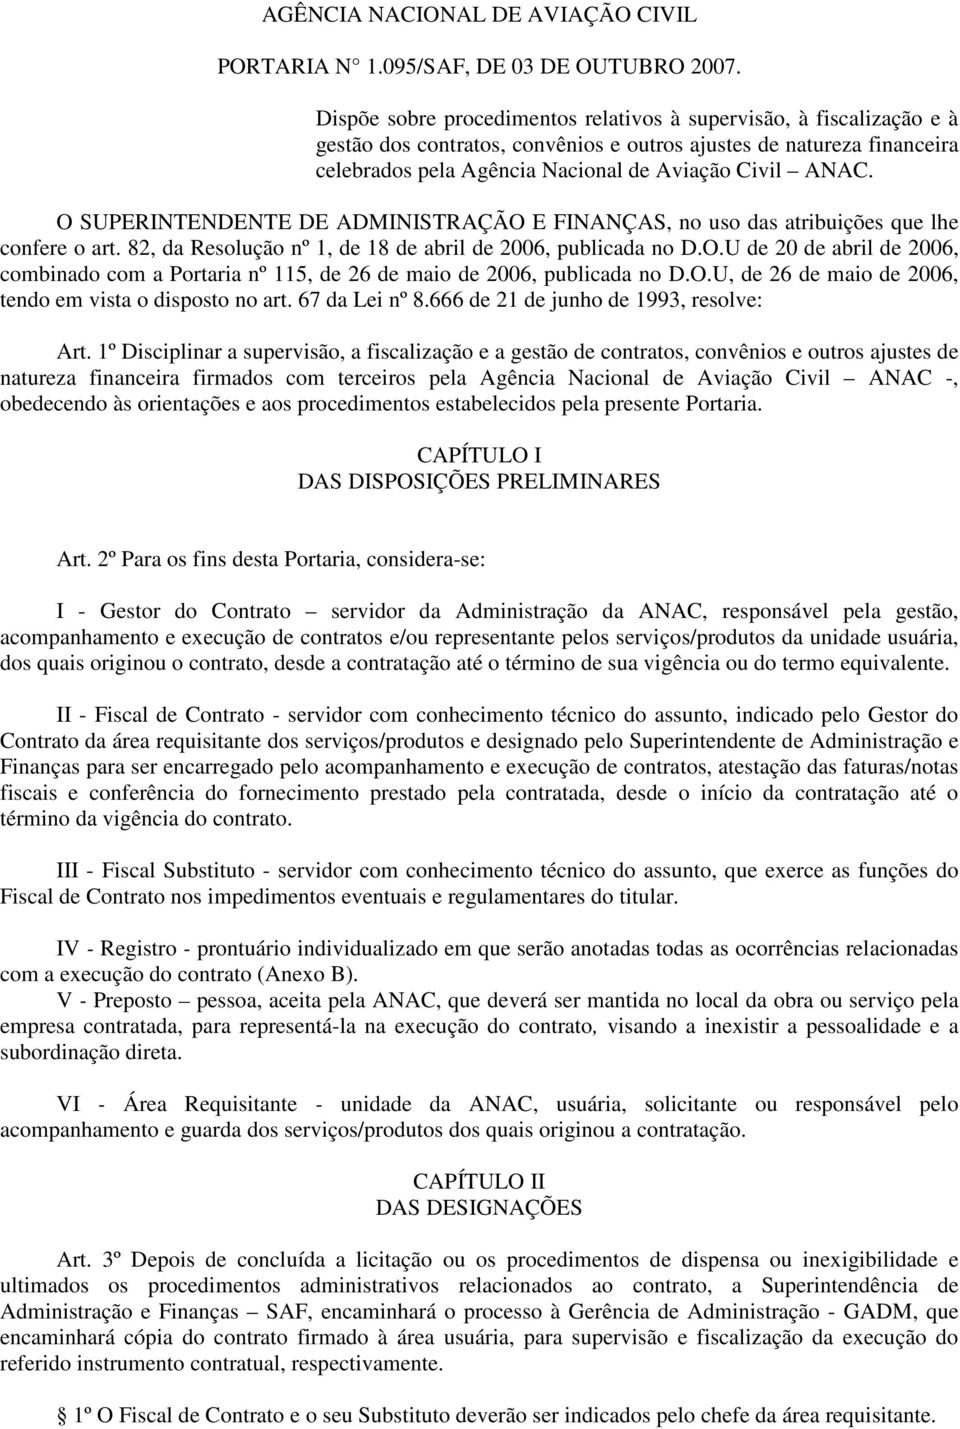 O SUPERINTENDENTE DE ADMINISTRAÇÃO E FINANÇAS, no uso das atribuições que lhe confere o art. 82, da Resolução nº 1, de 18 de abril de 2006, publicada no D.O.U de 20 de abril de 2006, combinado com a Portaria nº 115, de 26 de maio de 2006, publicada no D.